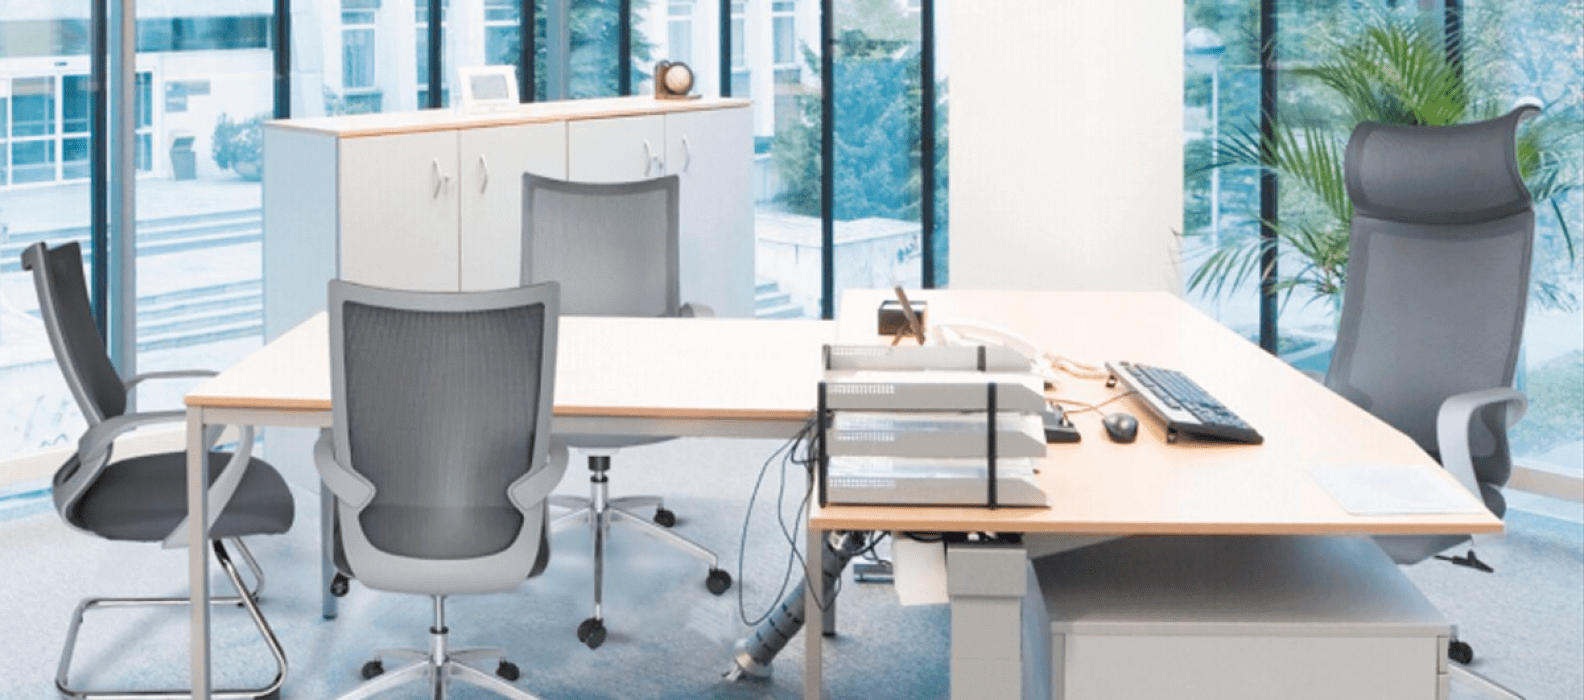 Diseño de muebles de oficina. Mobiliario moderno y elegante